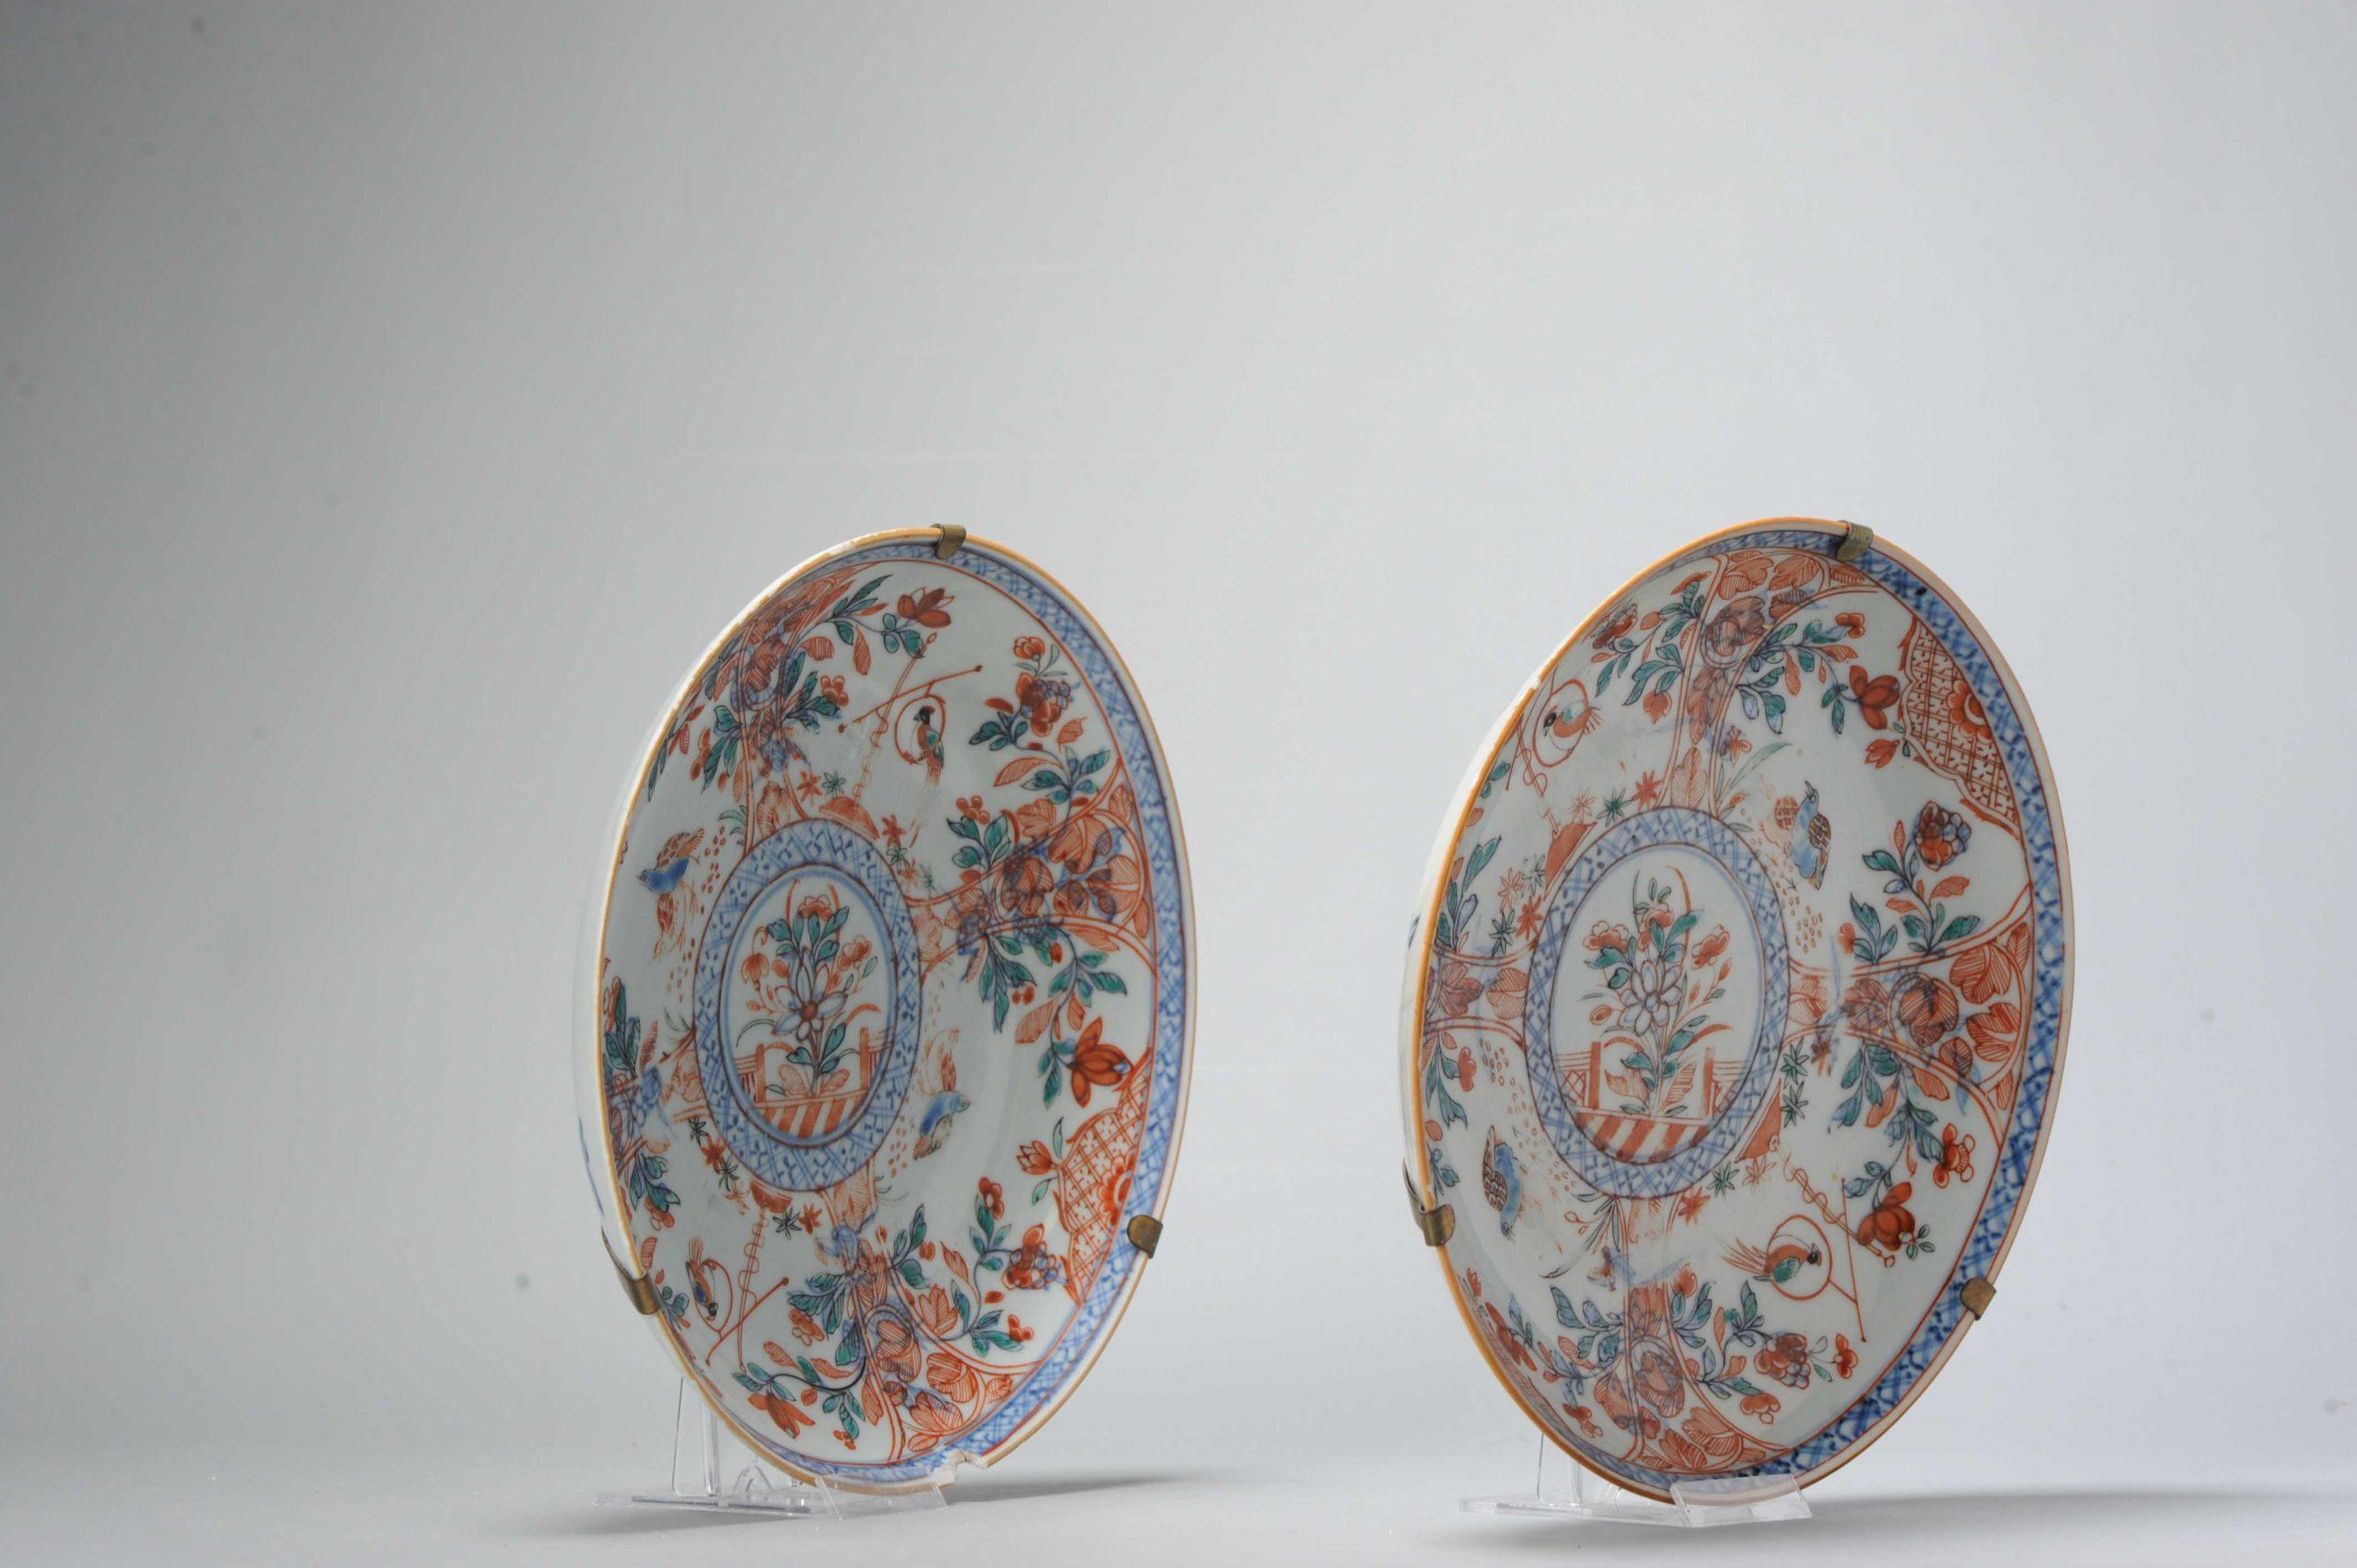 Ein sehr schön gemachtes Paar von zwei Amsterdam Bont Porzellanschalen aus dem 18. Jahrhundert. Wahrscheinlich blaues und weißes Geschirr aus der Qianlong-Periode mit Amsterdamer Bont-Dekor mit Blumen, Wachteln und Papageien. Echte